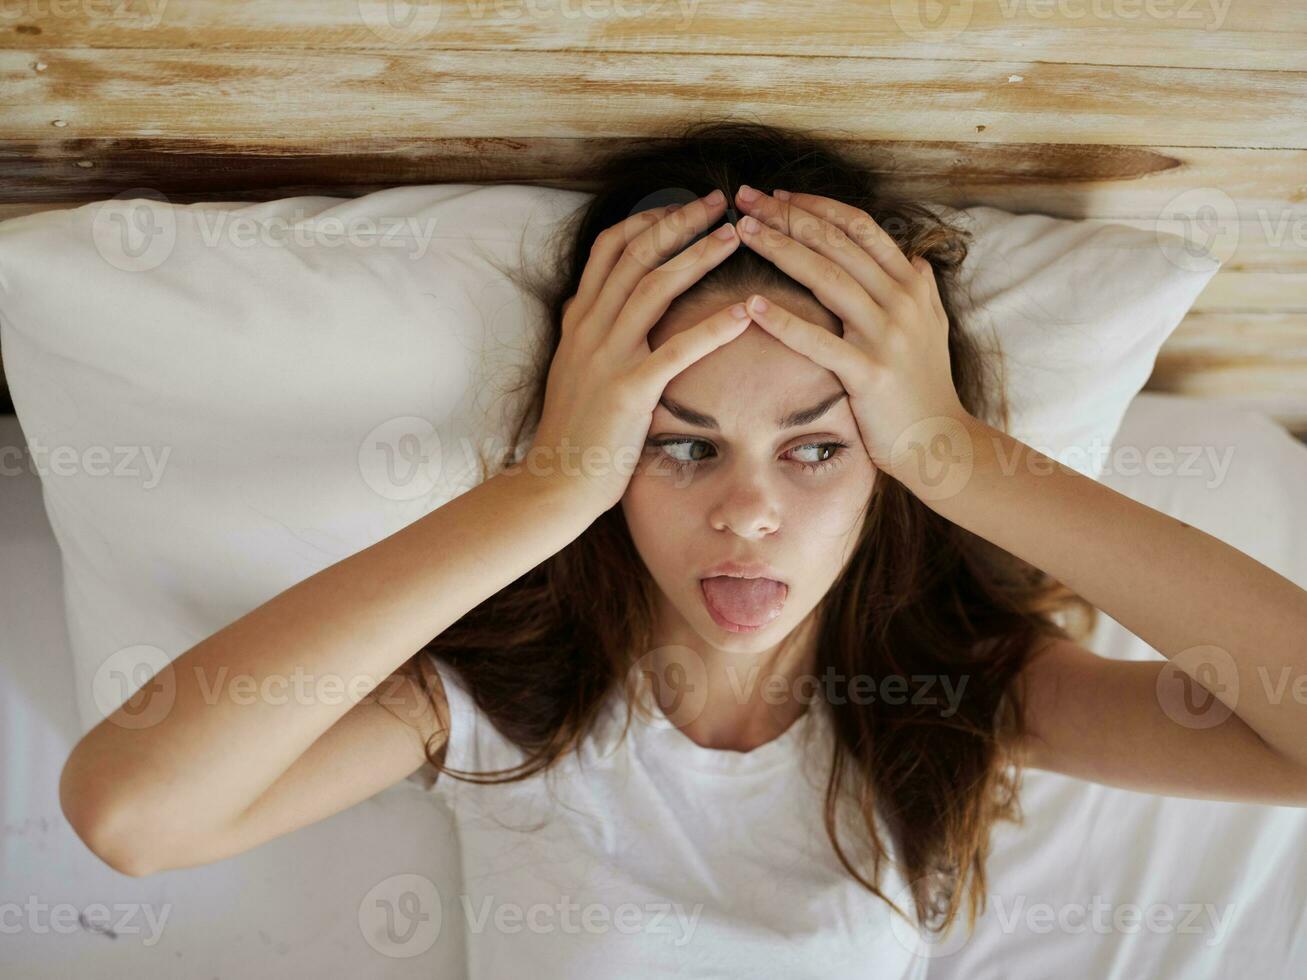 mujer participación su cabeza en cama demostración lengua parte superior ver foto